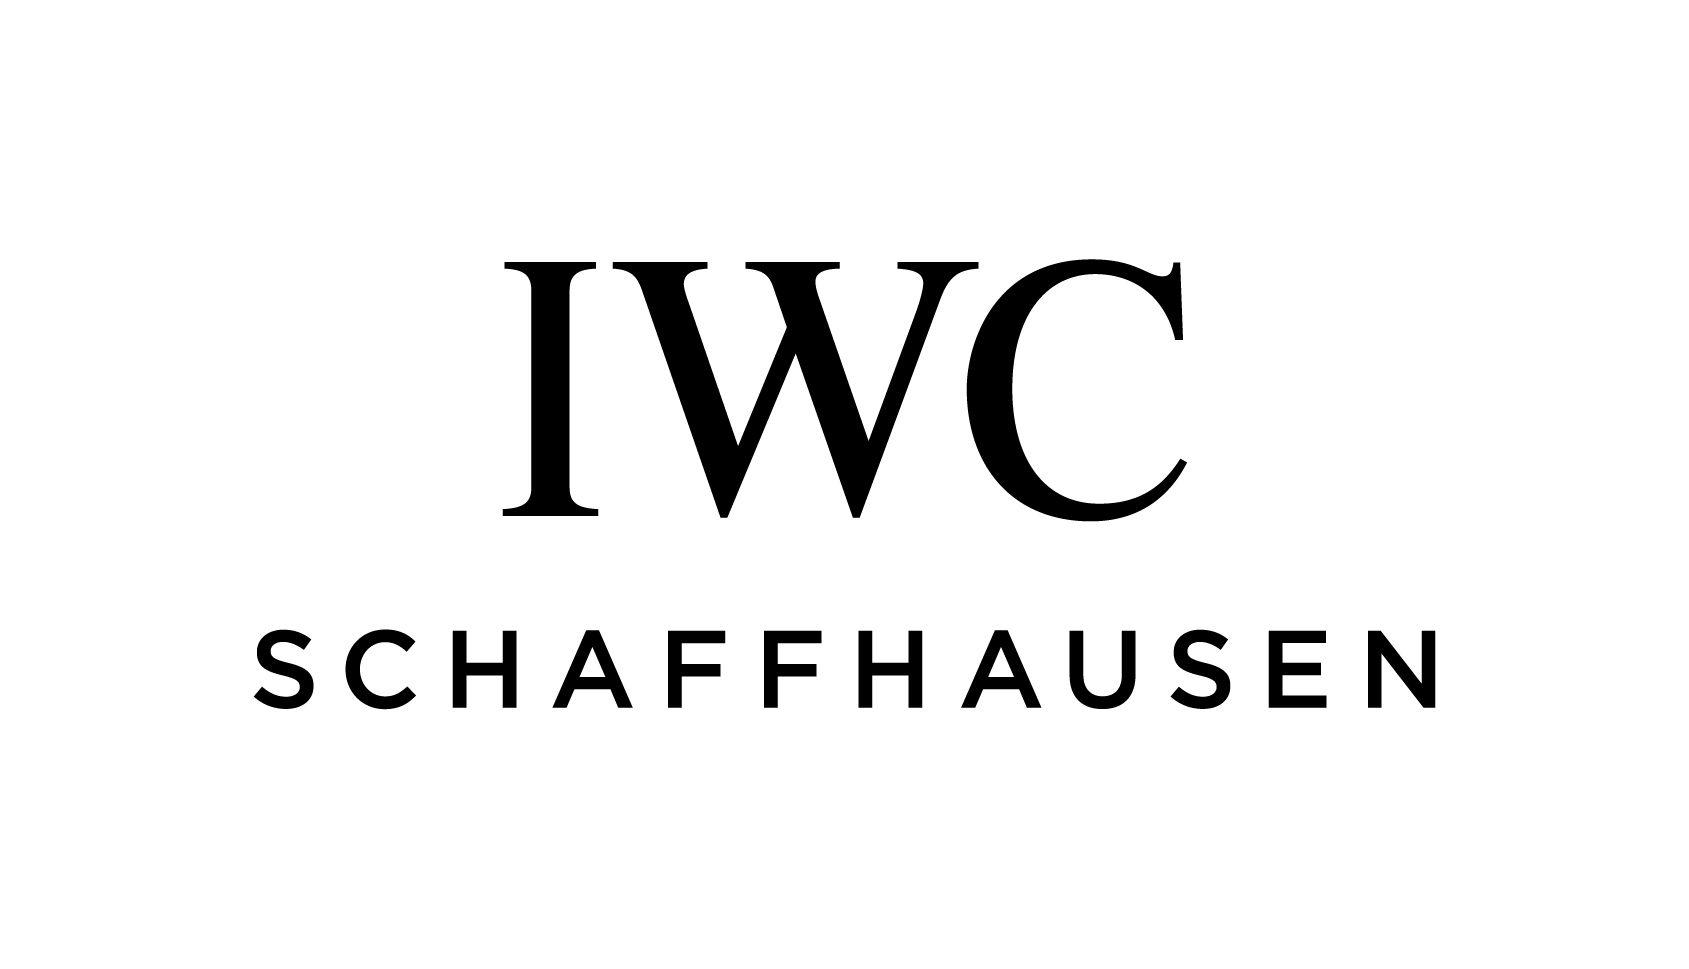 IWC Logo - File:IWC Schaffhausen Logo.jpg - Wikimedia Commons